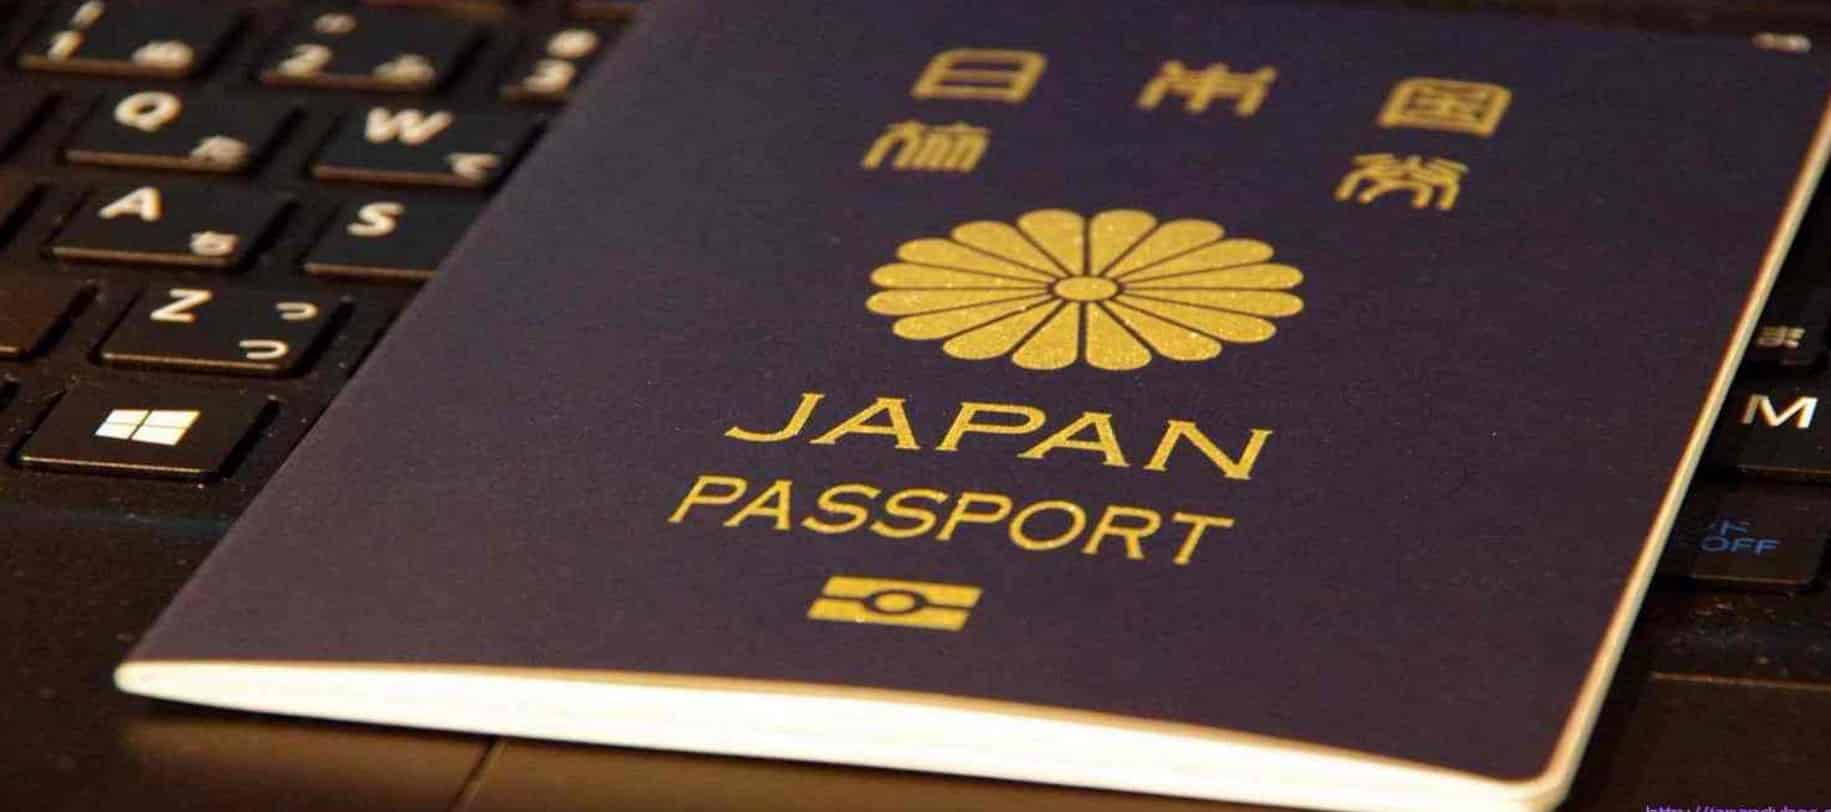 Thủ xin xin visa kỹ sư Nhật Bản 2022. Điều kiện, thời gian lưu trú, hồ sơ như thế nào?